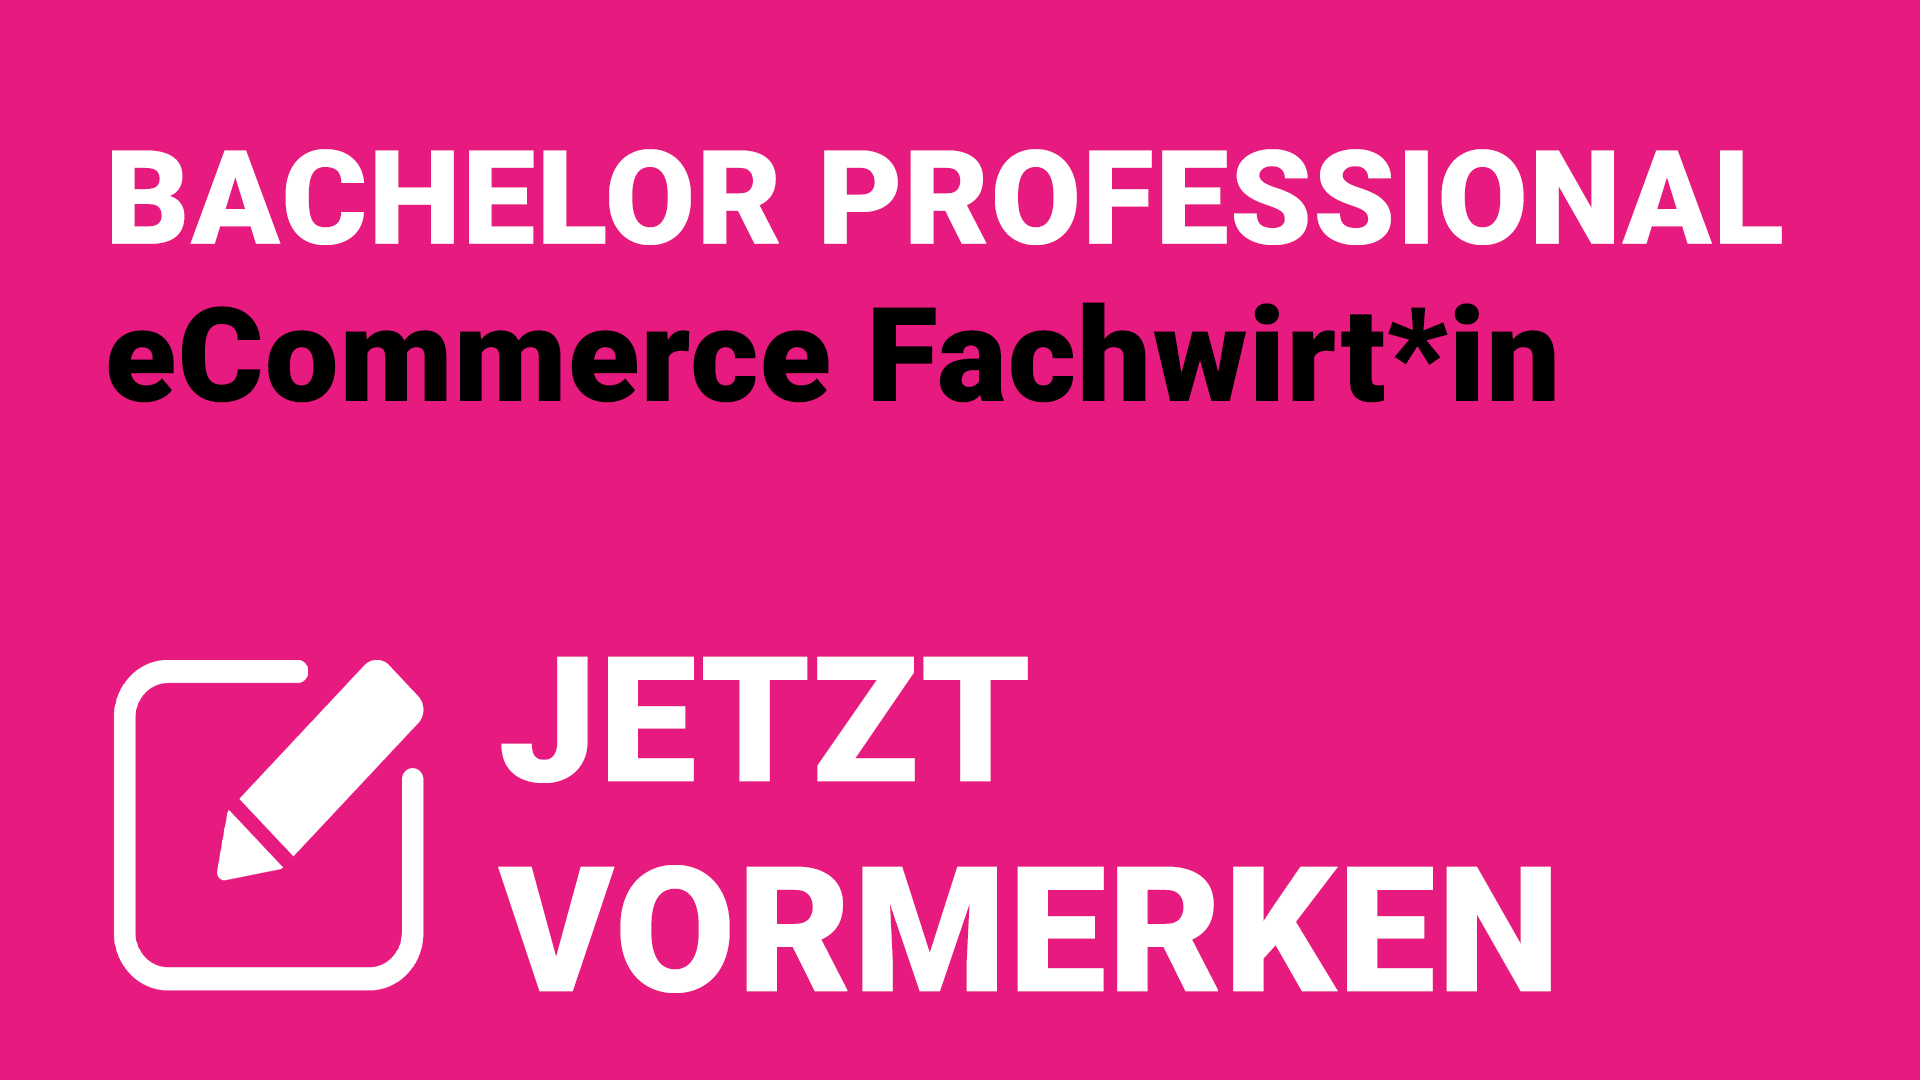 Bachelor Professional „eCommerce Fachwirt*in“ – Jetzt vormerken